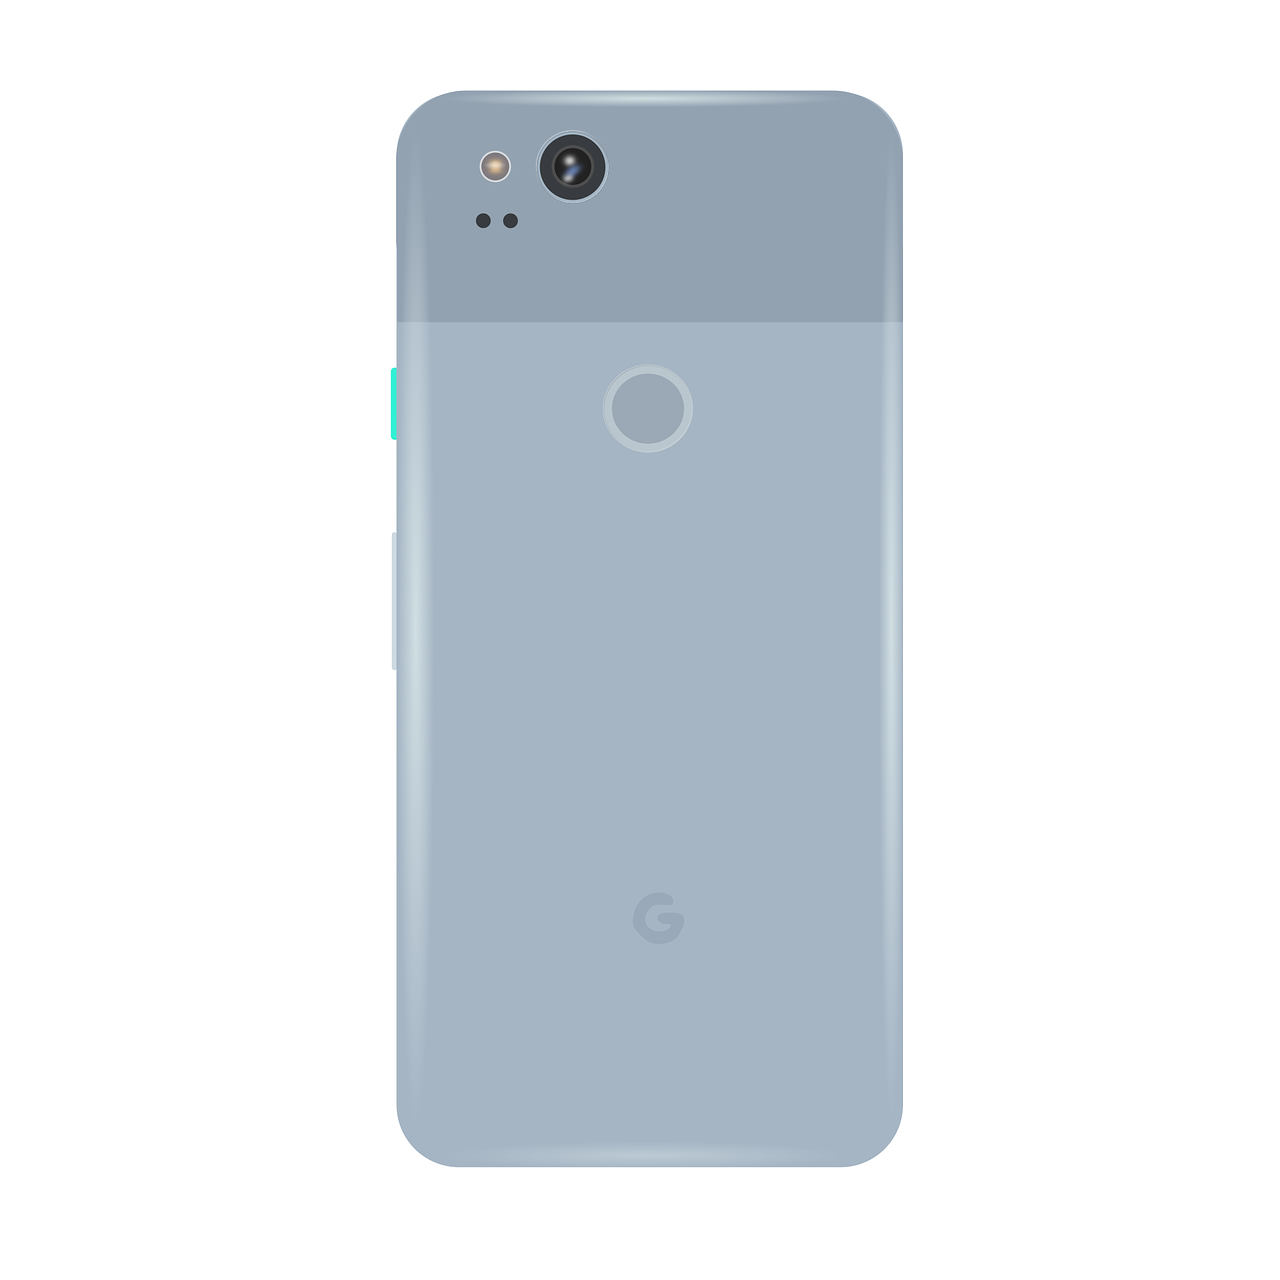 google pixel 2 pixel smartphone pixel 2 free photo